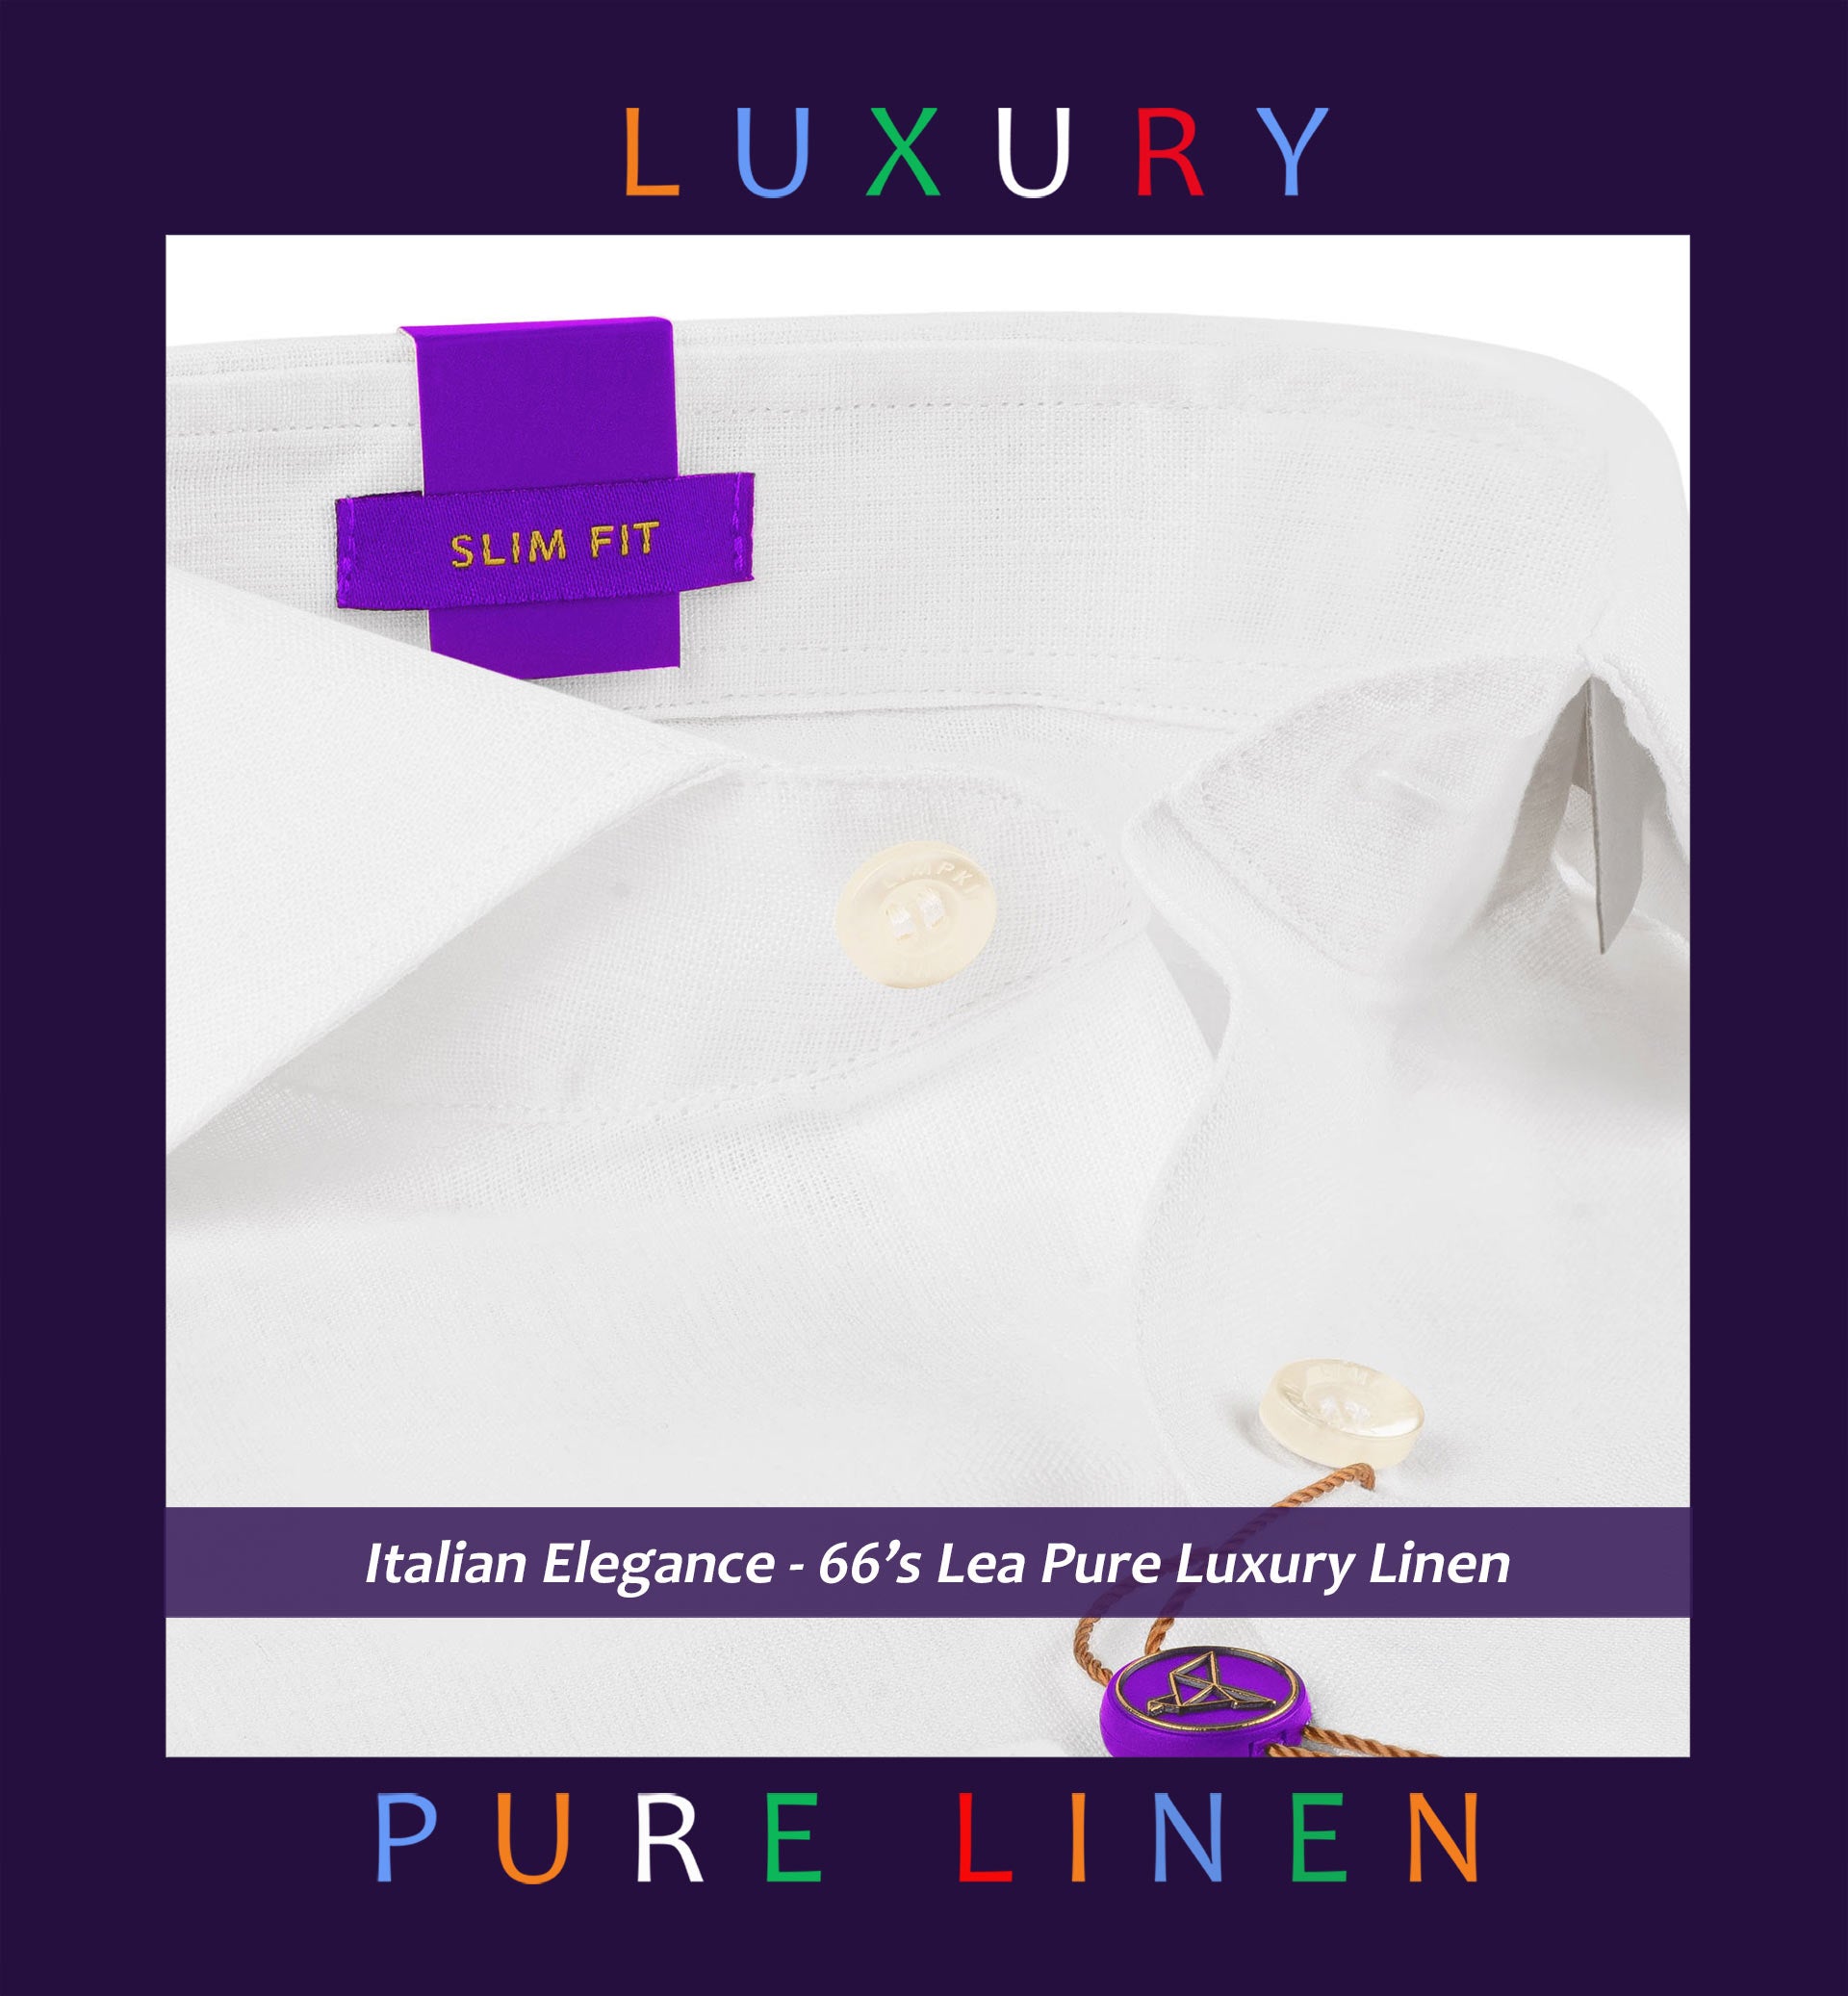 Seville- Pristine Pure White Linen- 66's Lea Pure Luxury Linen- Delivery from 29th April